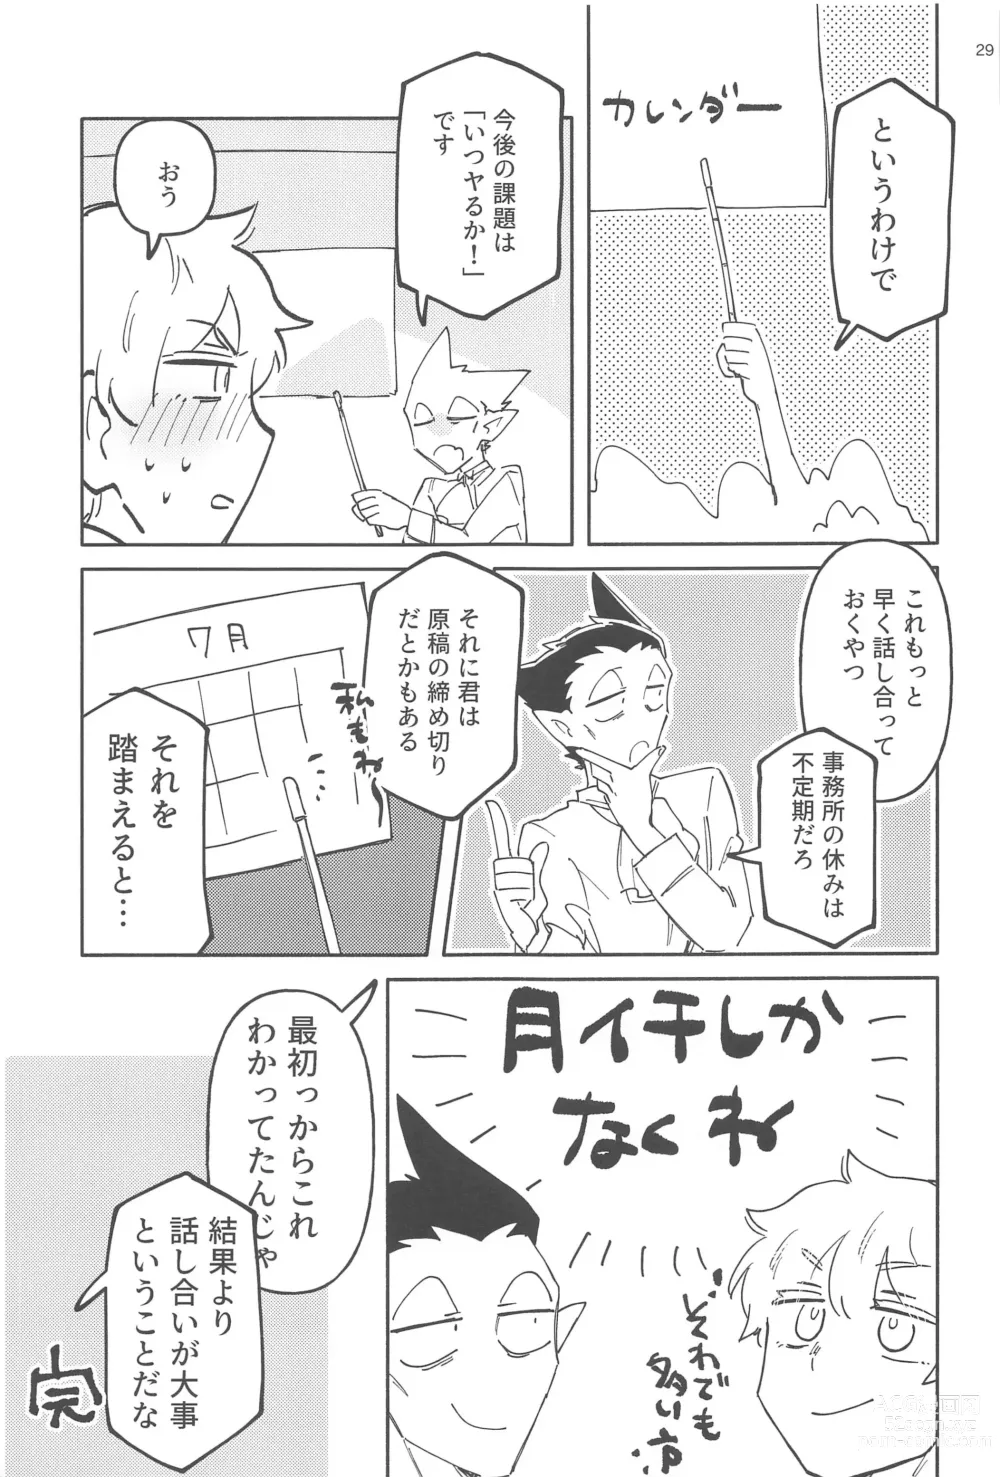 Page 28 of doujinshi ZHKNN!